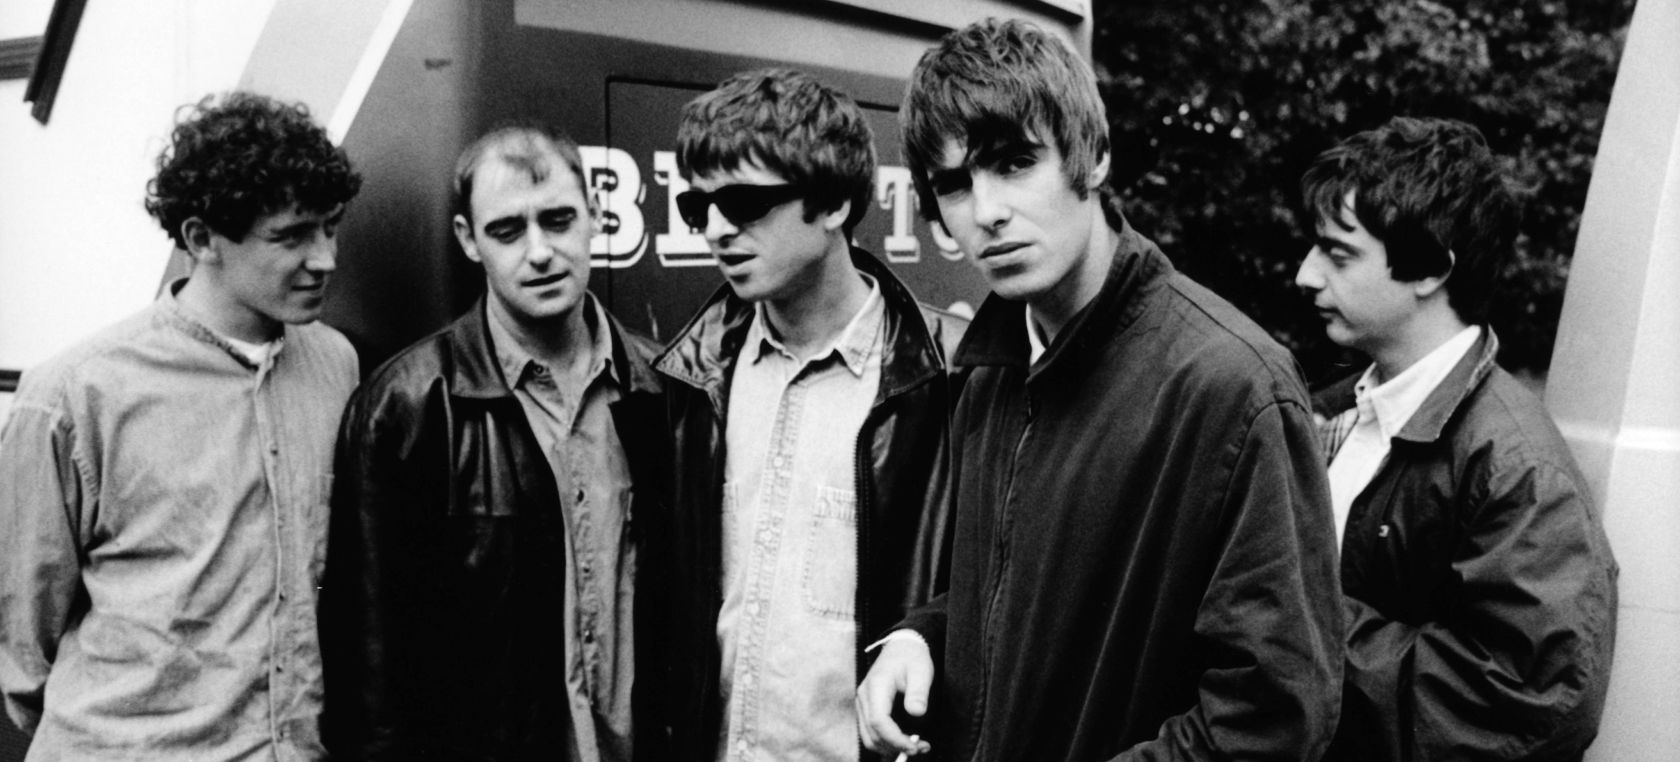 25 años de 'Be here now': Cinco curiosidades con nombre propio del principio del fin de Oasis